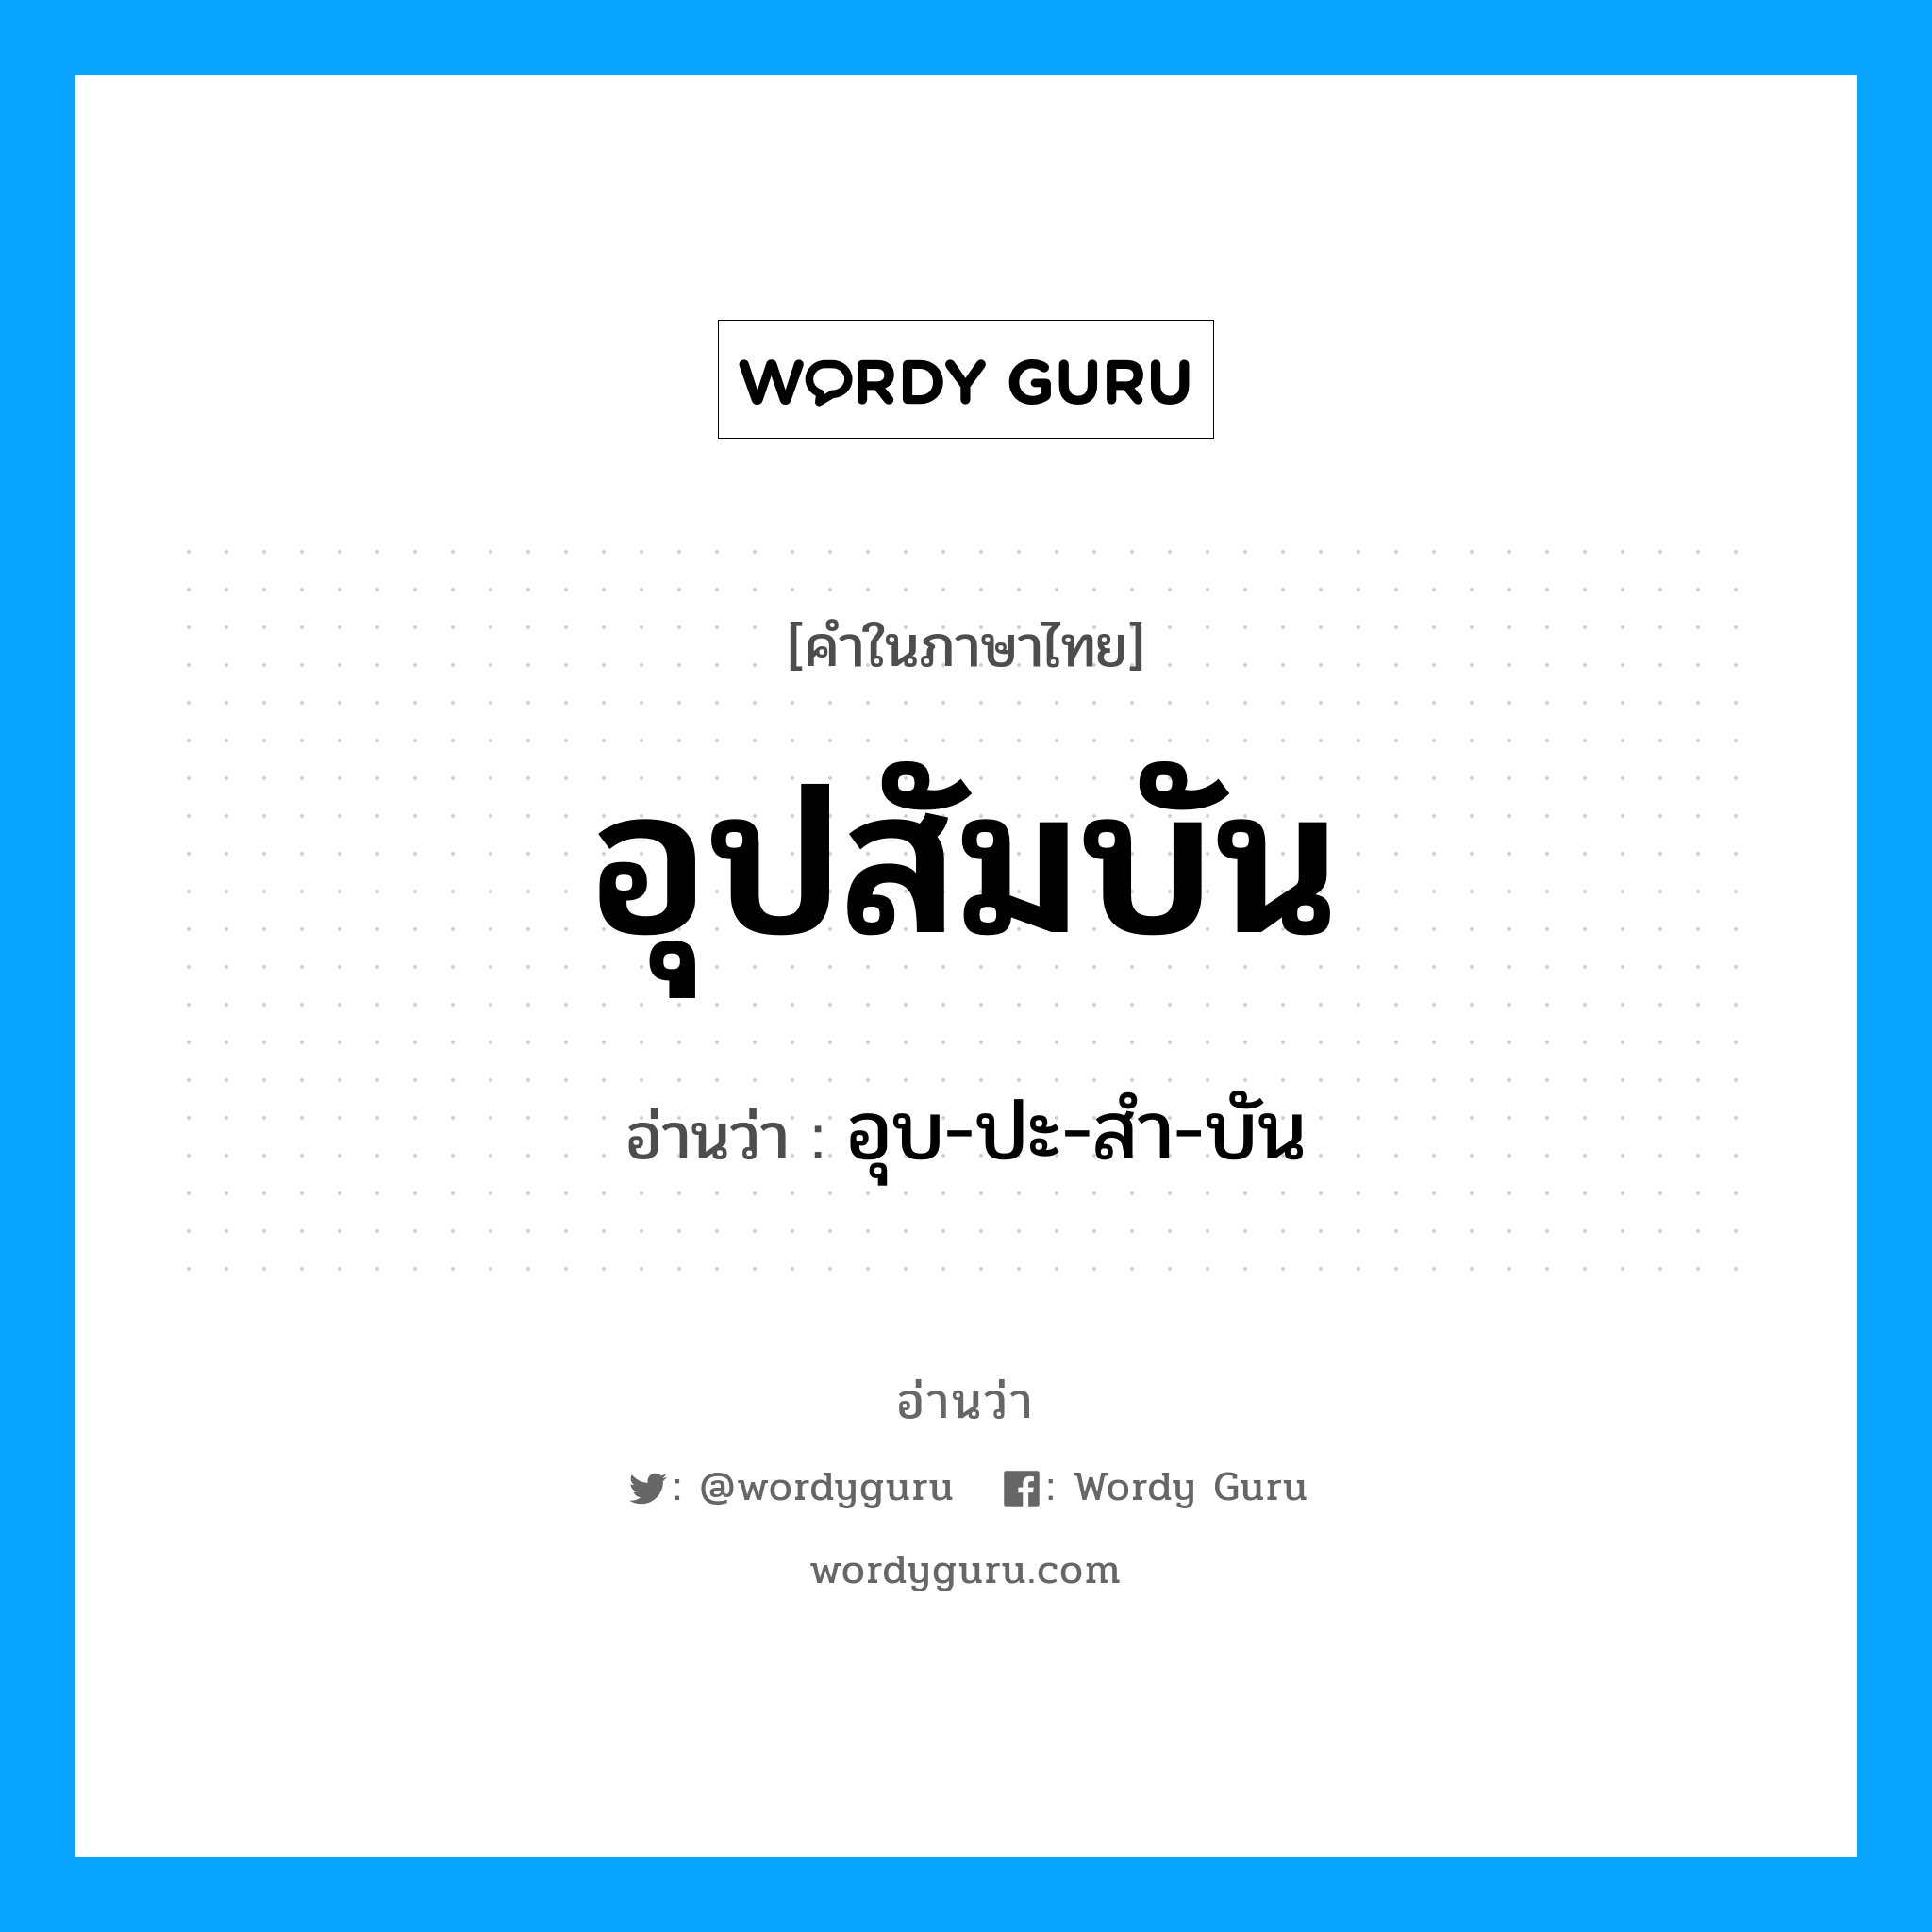 อุบ-ปะ-สำ-บัน เป็นคำอ่านของคำไหน?, คำในภาษาไทย อุบ-ปะ-สำ-บัน อ่านว่า อุปสัมบัน